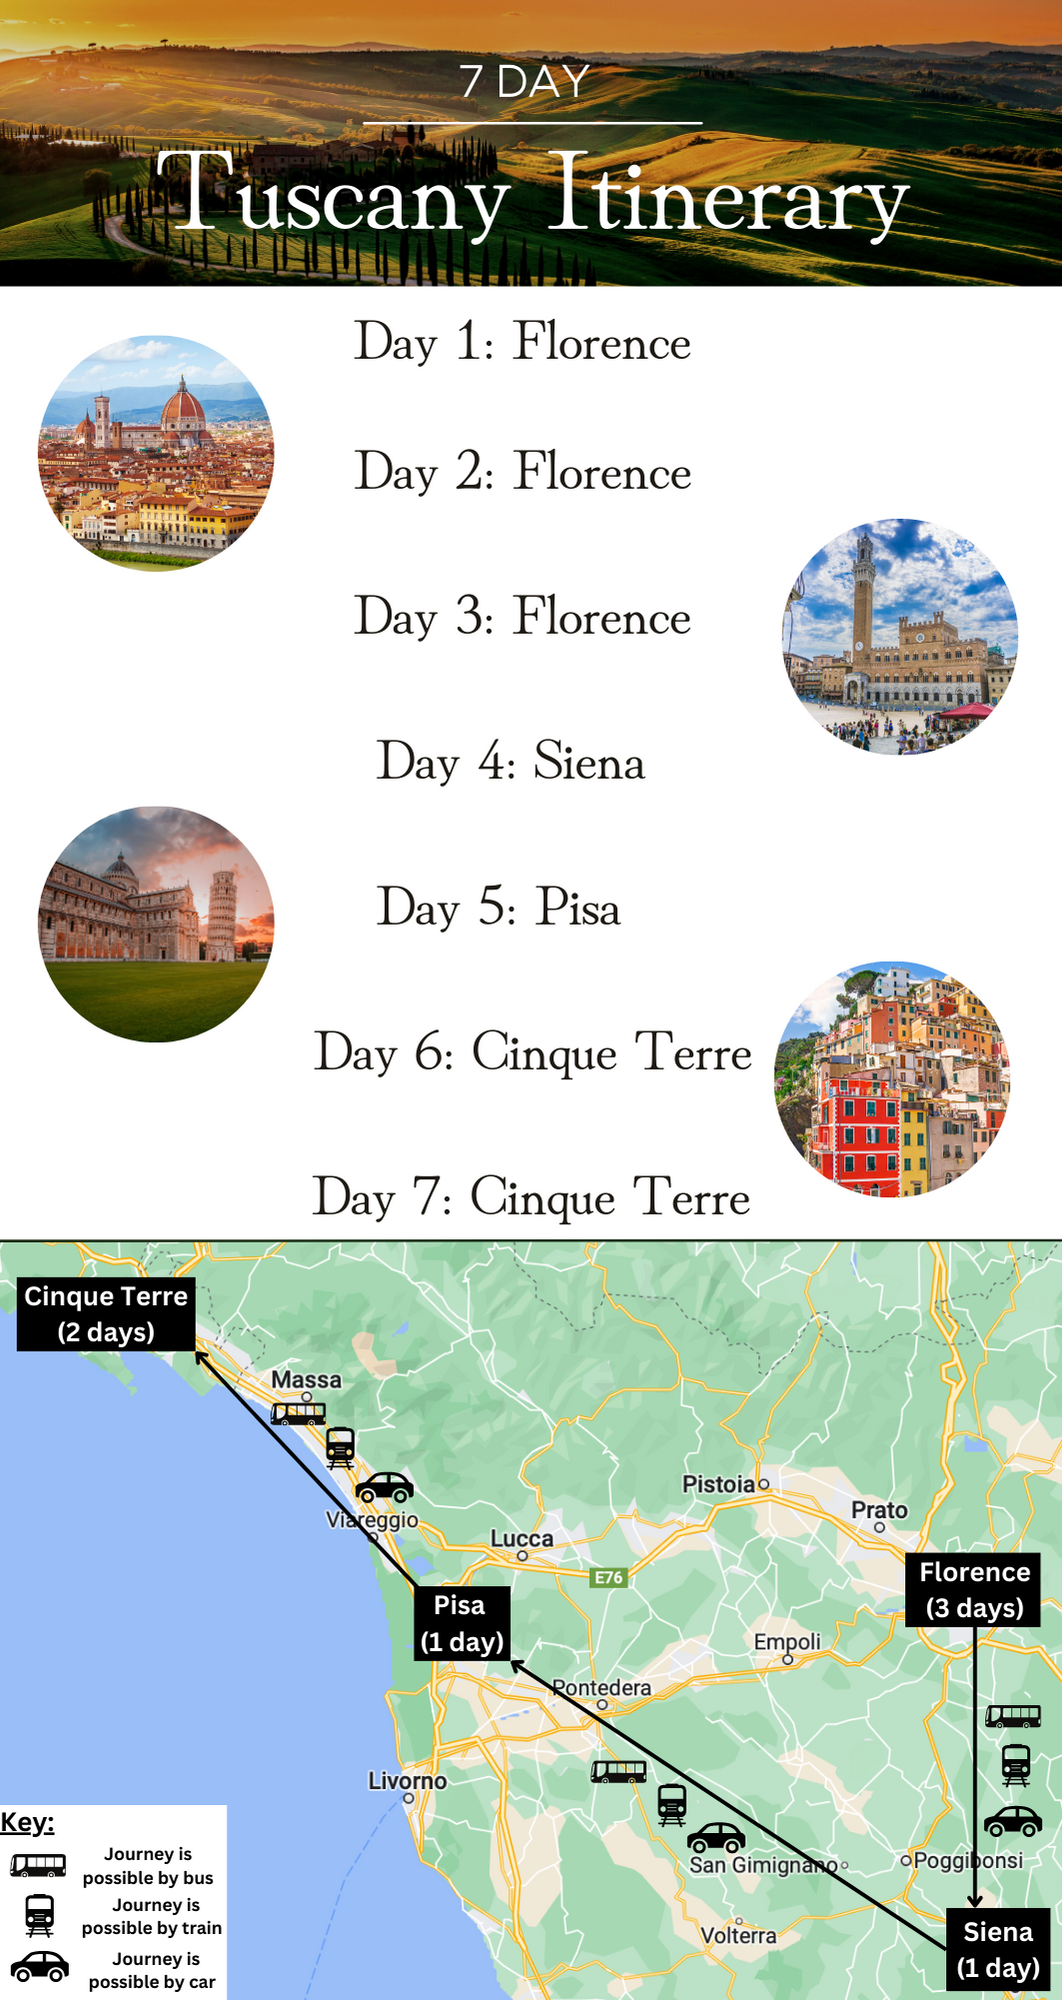 7 Day Tuscany Itinerary